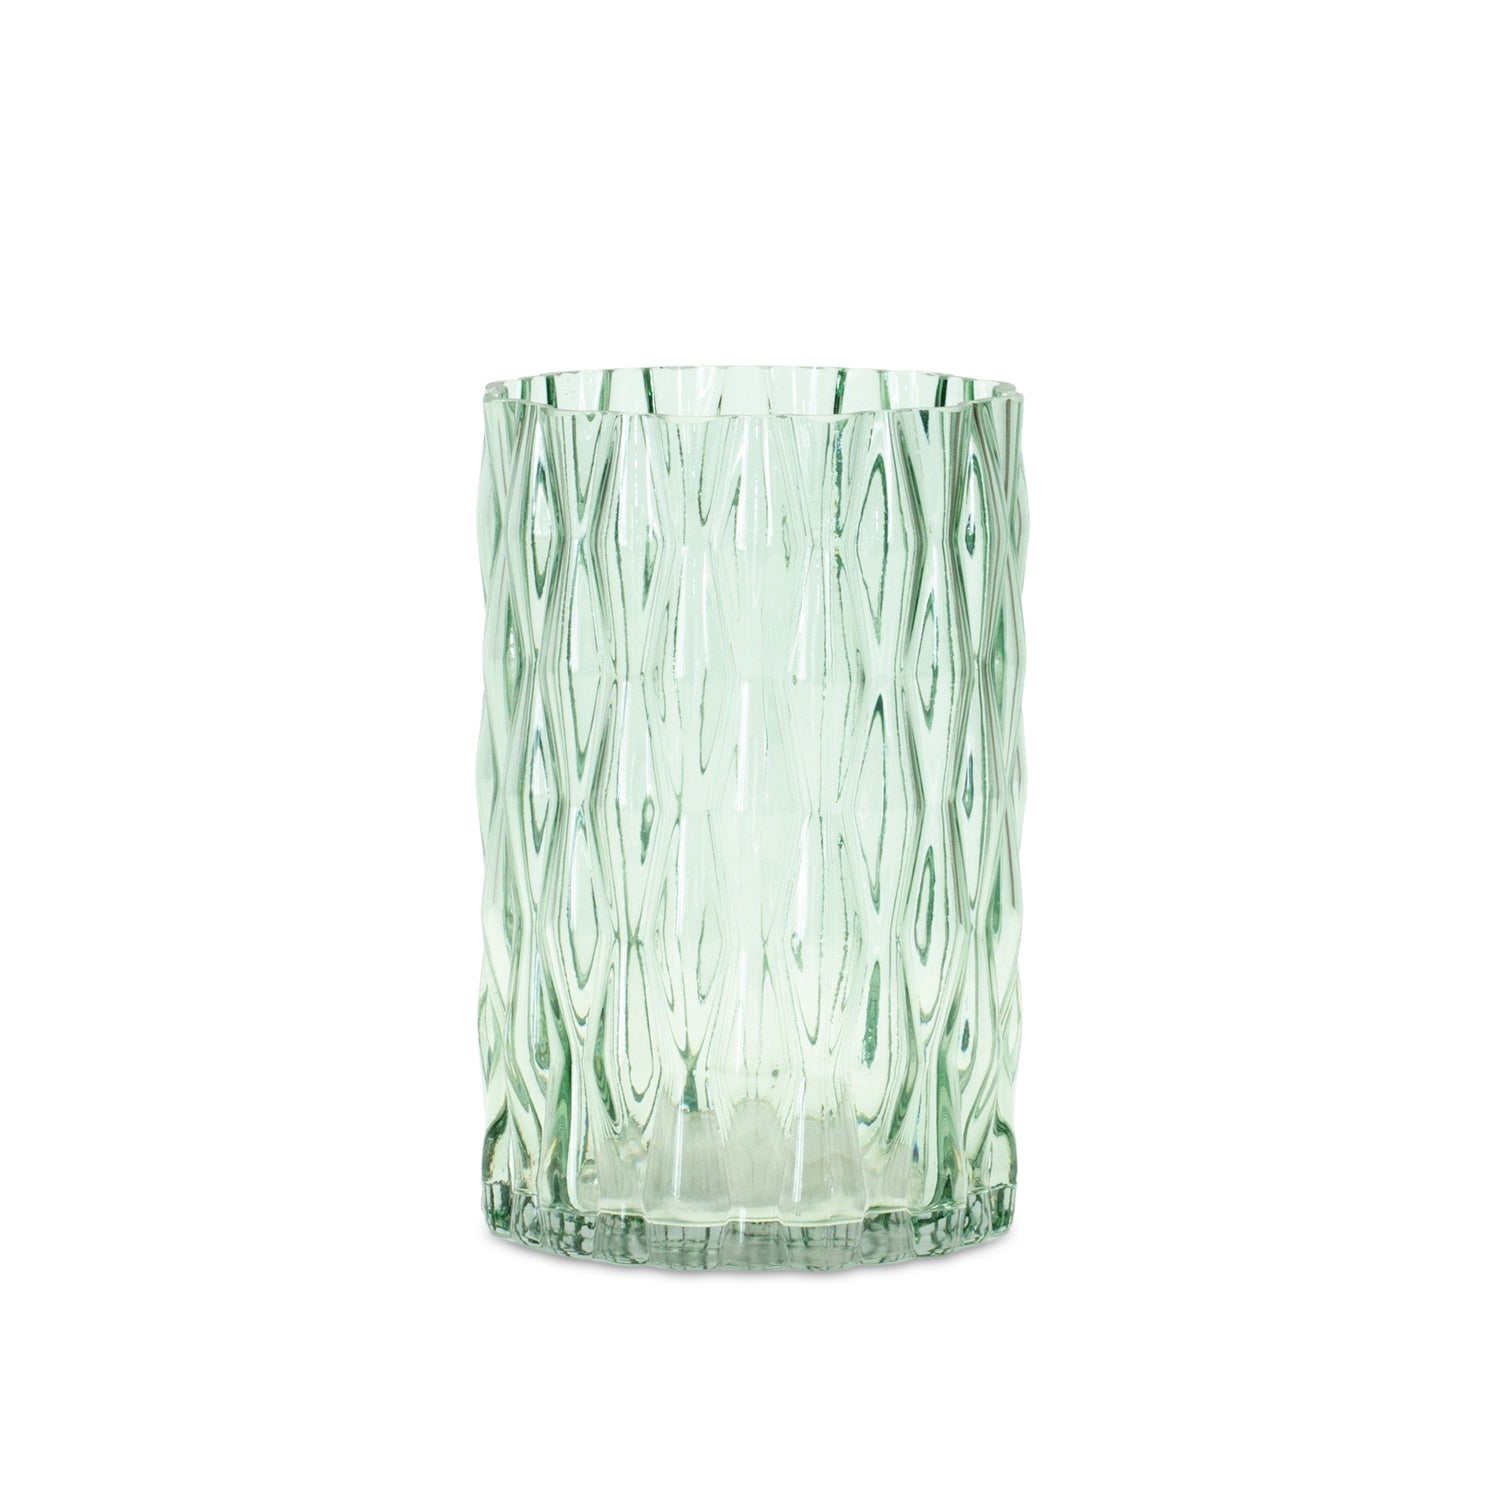 Vase 5"D x 8"H Glass